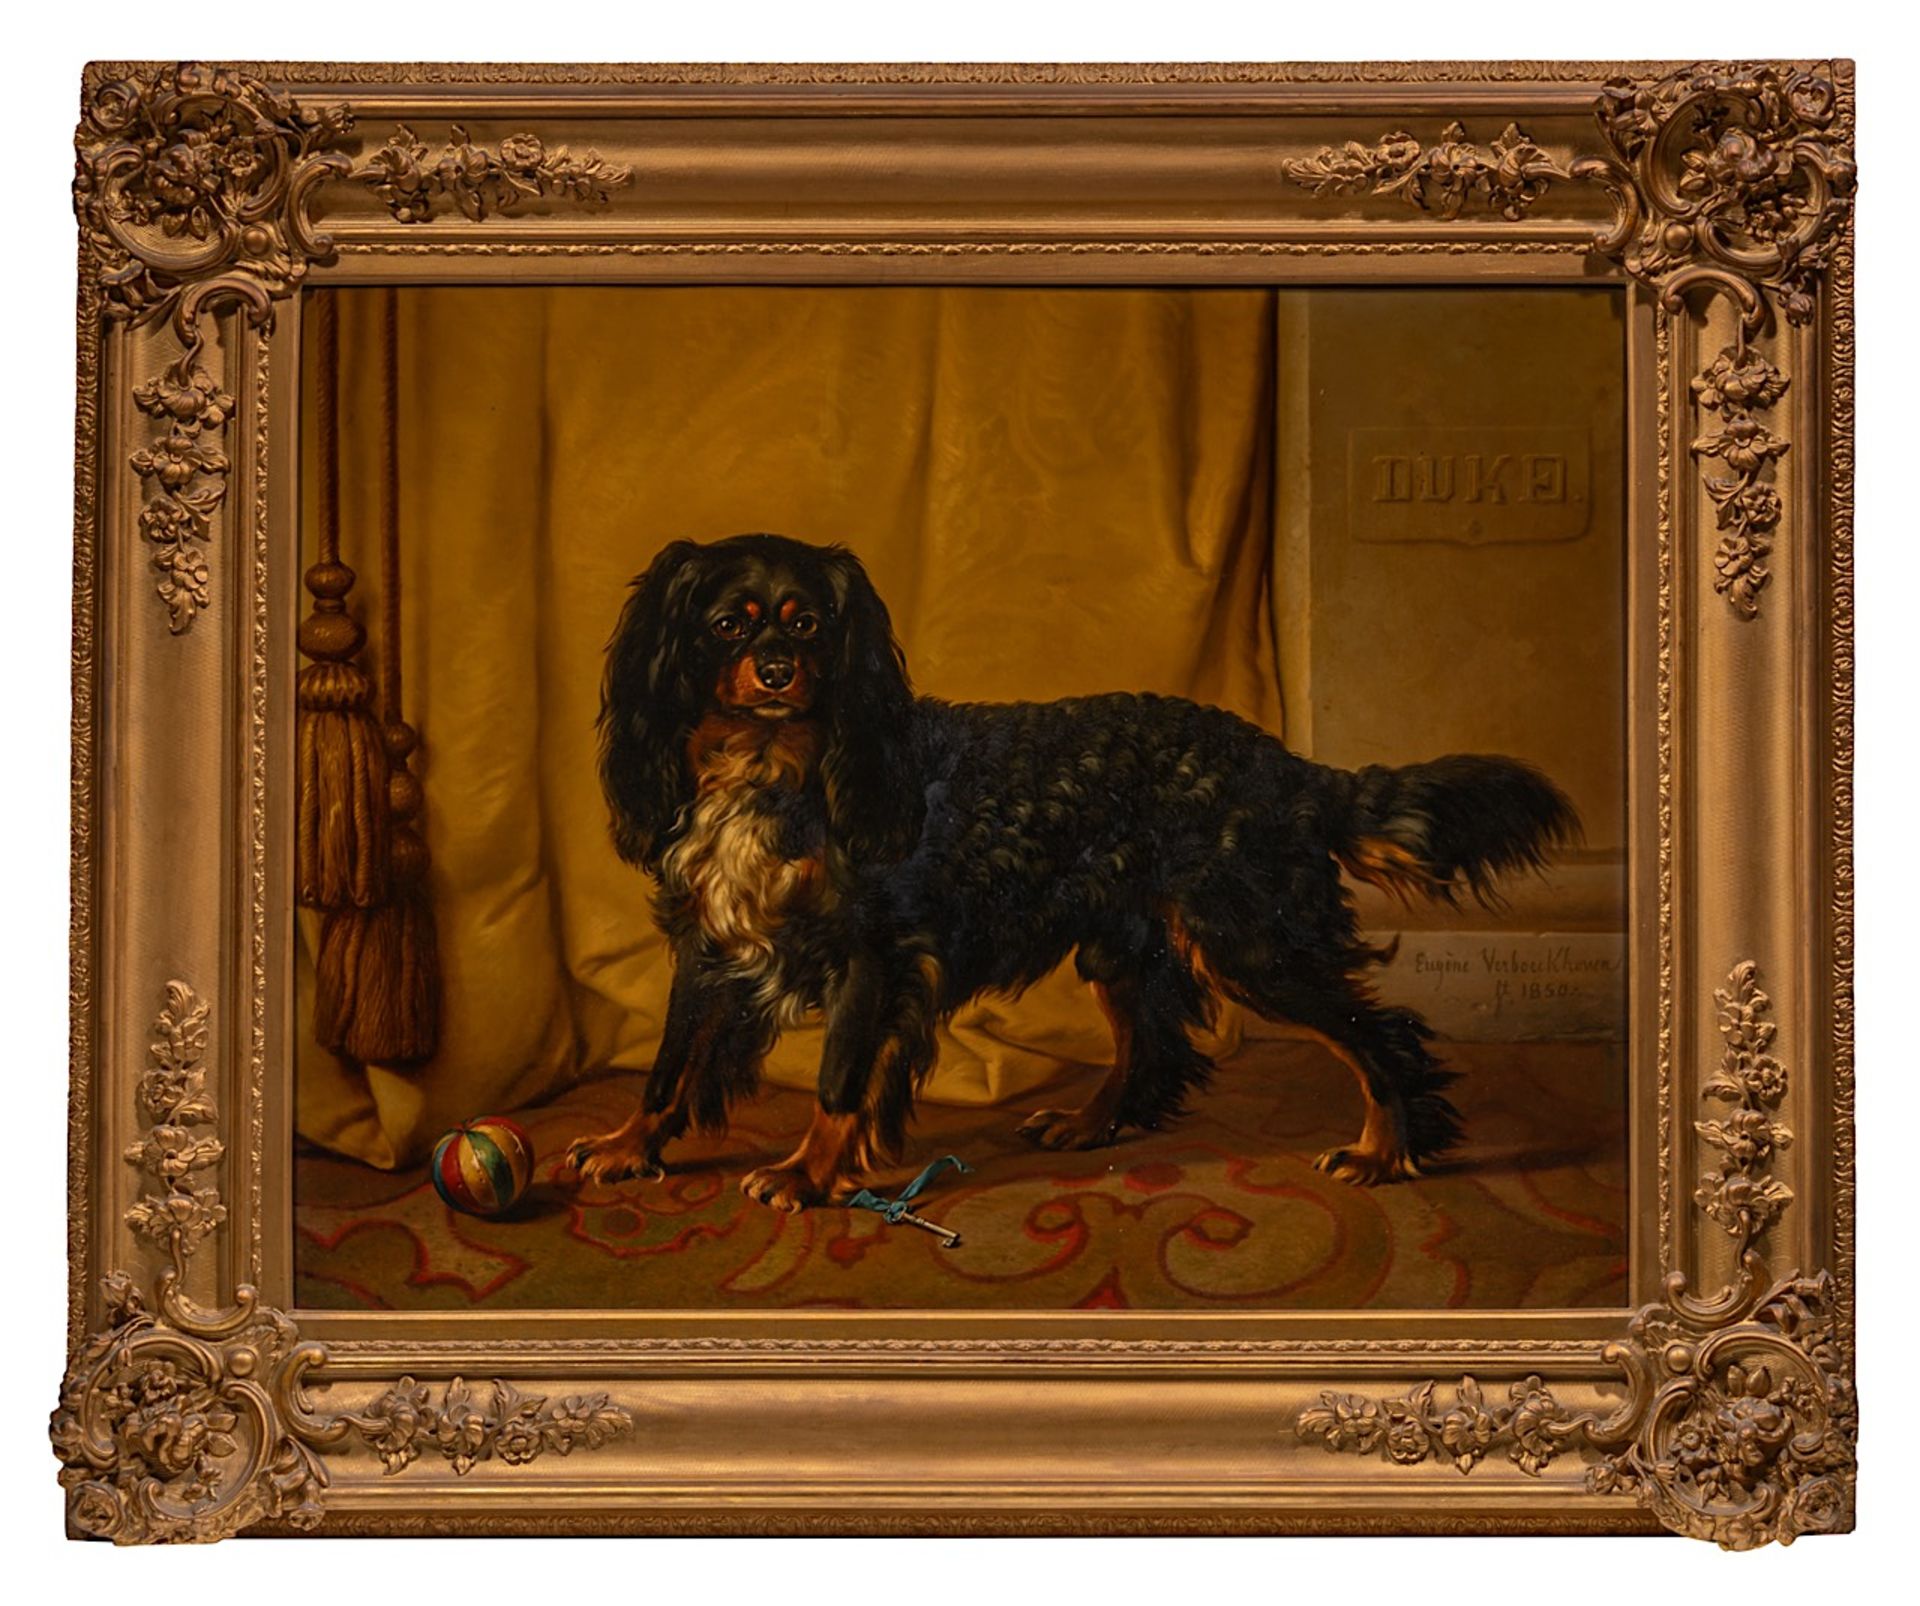 Eugene Verboeckhoven (1798/99-1881), A King Charles cavalier spaniel named Duke, 1850, oil on mahoga - Image 2 of 7